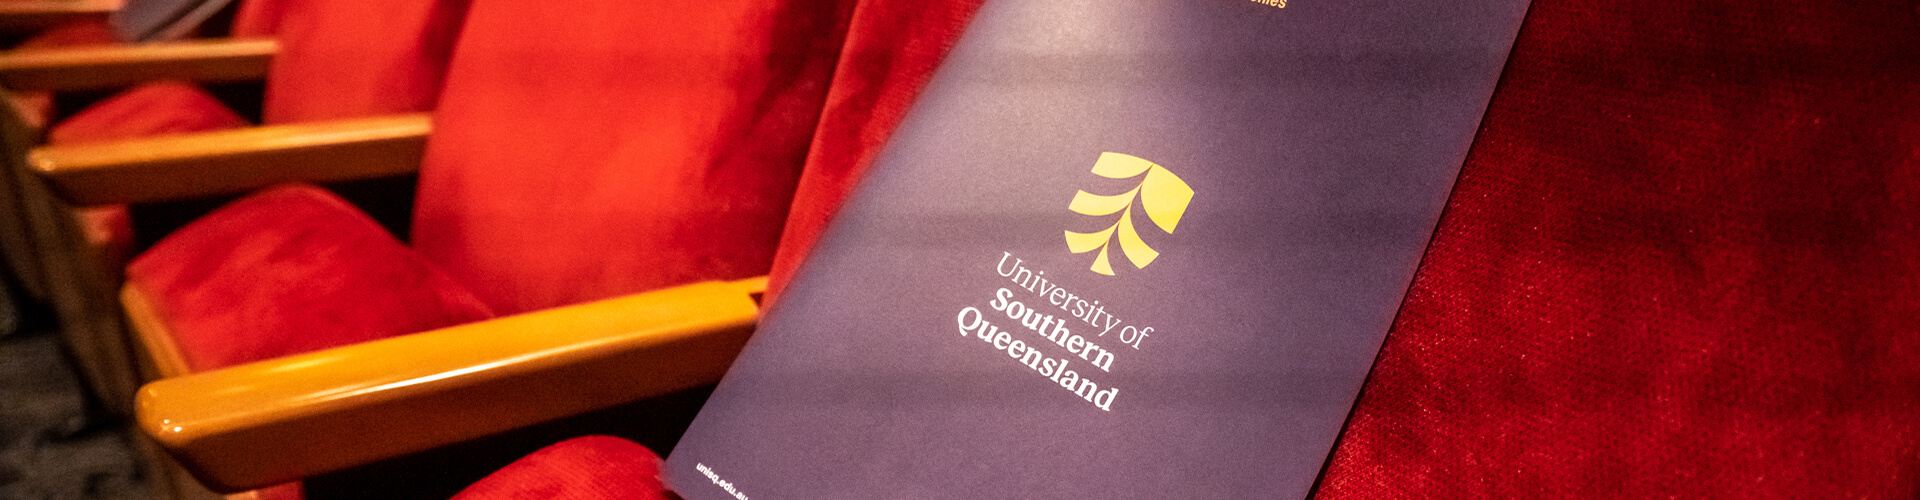 University of Southern Queensland Graduation Ceremonies.